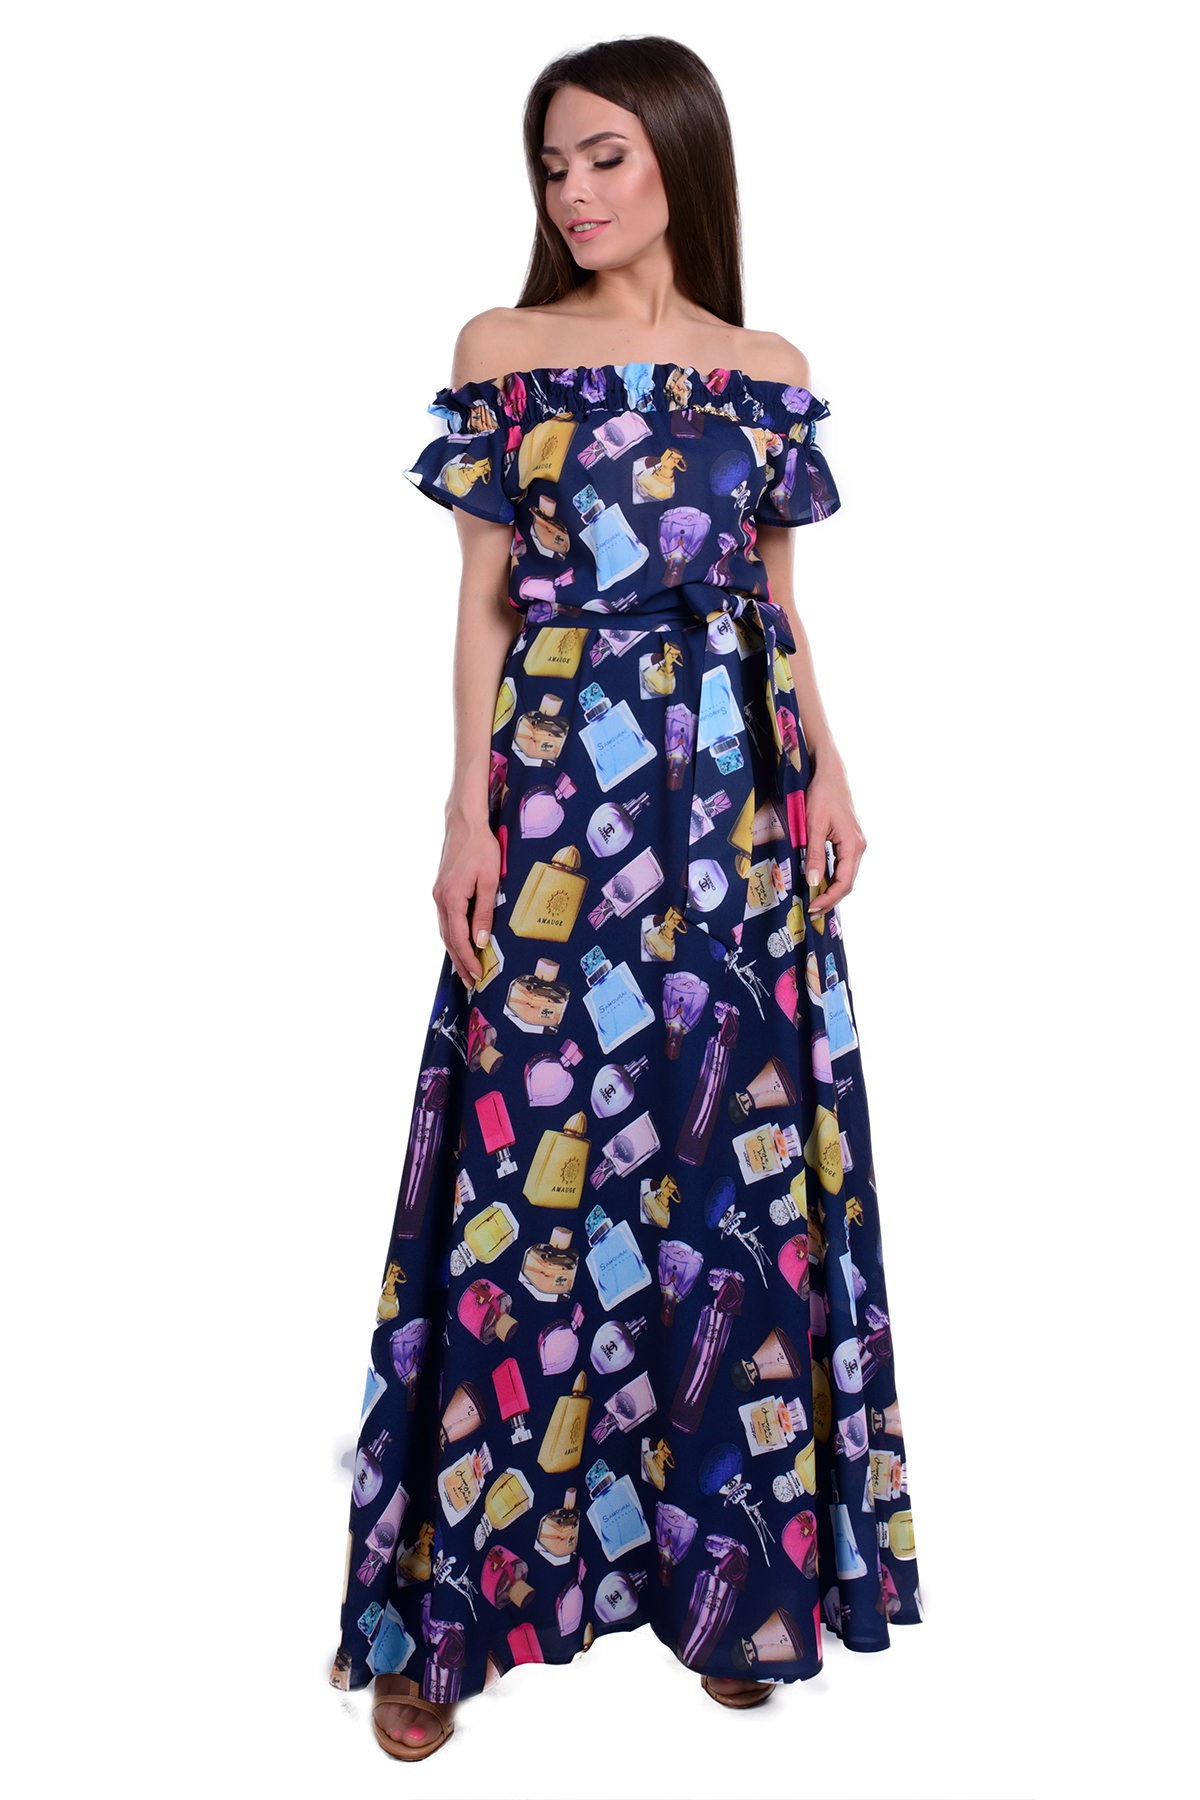 Коктейльное платье оптом от Modus Платье Смайл принт макси креп шифон